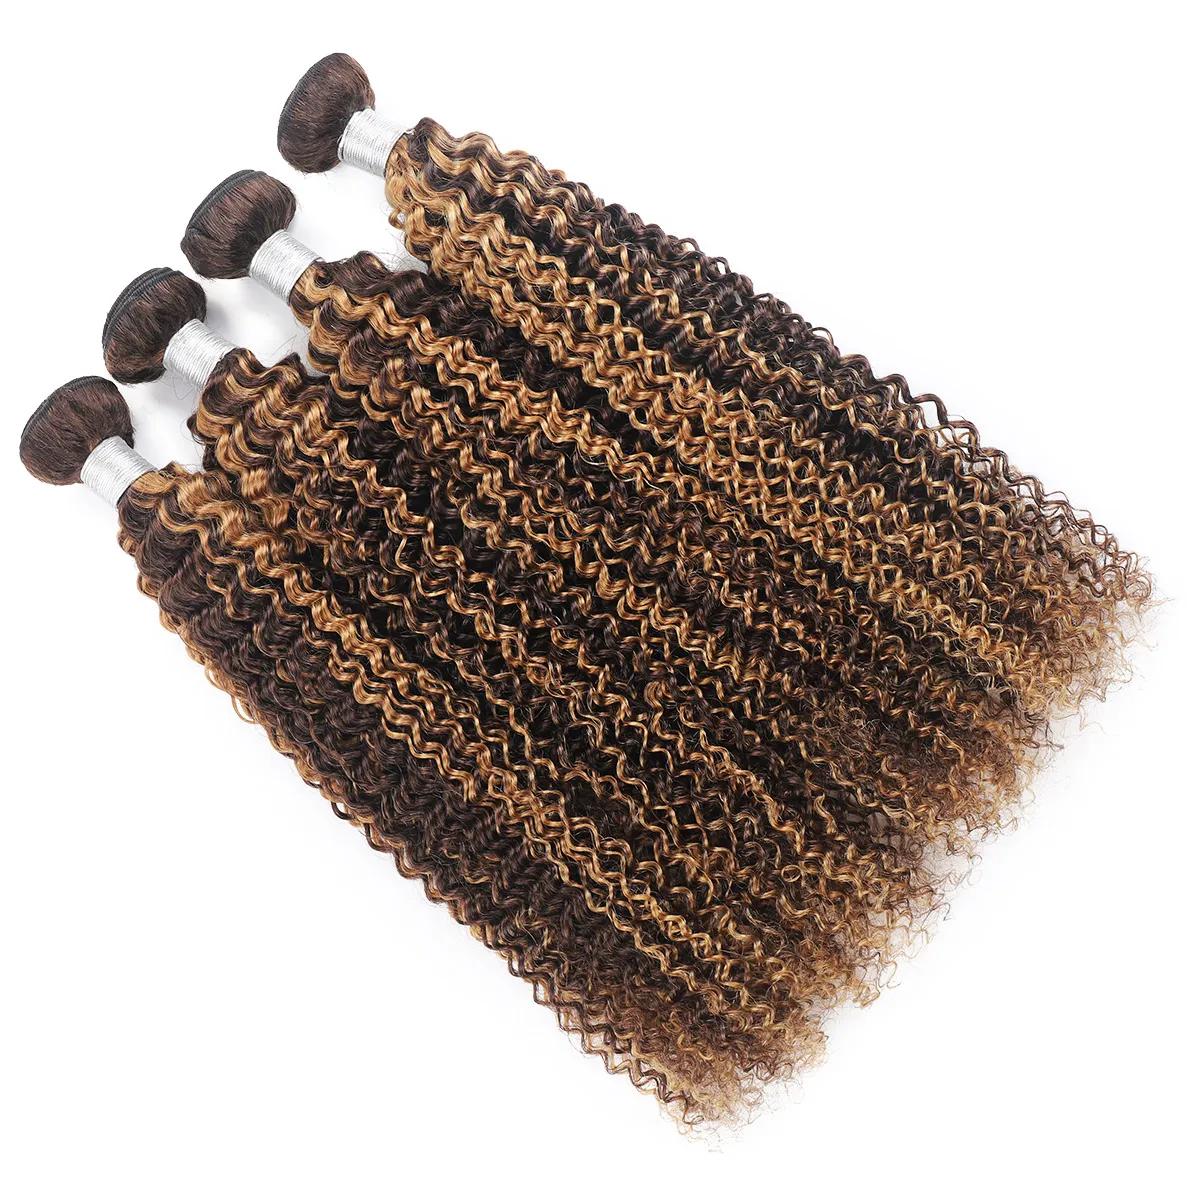 Ishow Wefts Lossa Deep Highlight 4/27 Ombre Färg Brown Human Hair Buntar 8-28INCH Brazilian Body Wave Curly Peruvian Virgn Hårförlängningar för kvinnor Alla åldrar